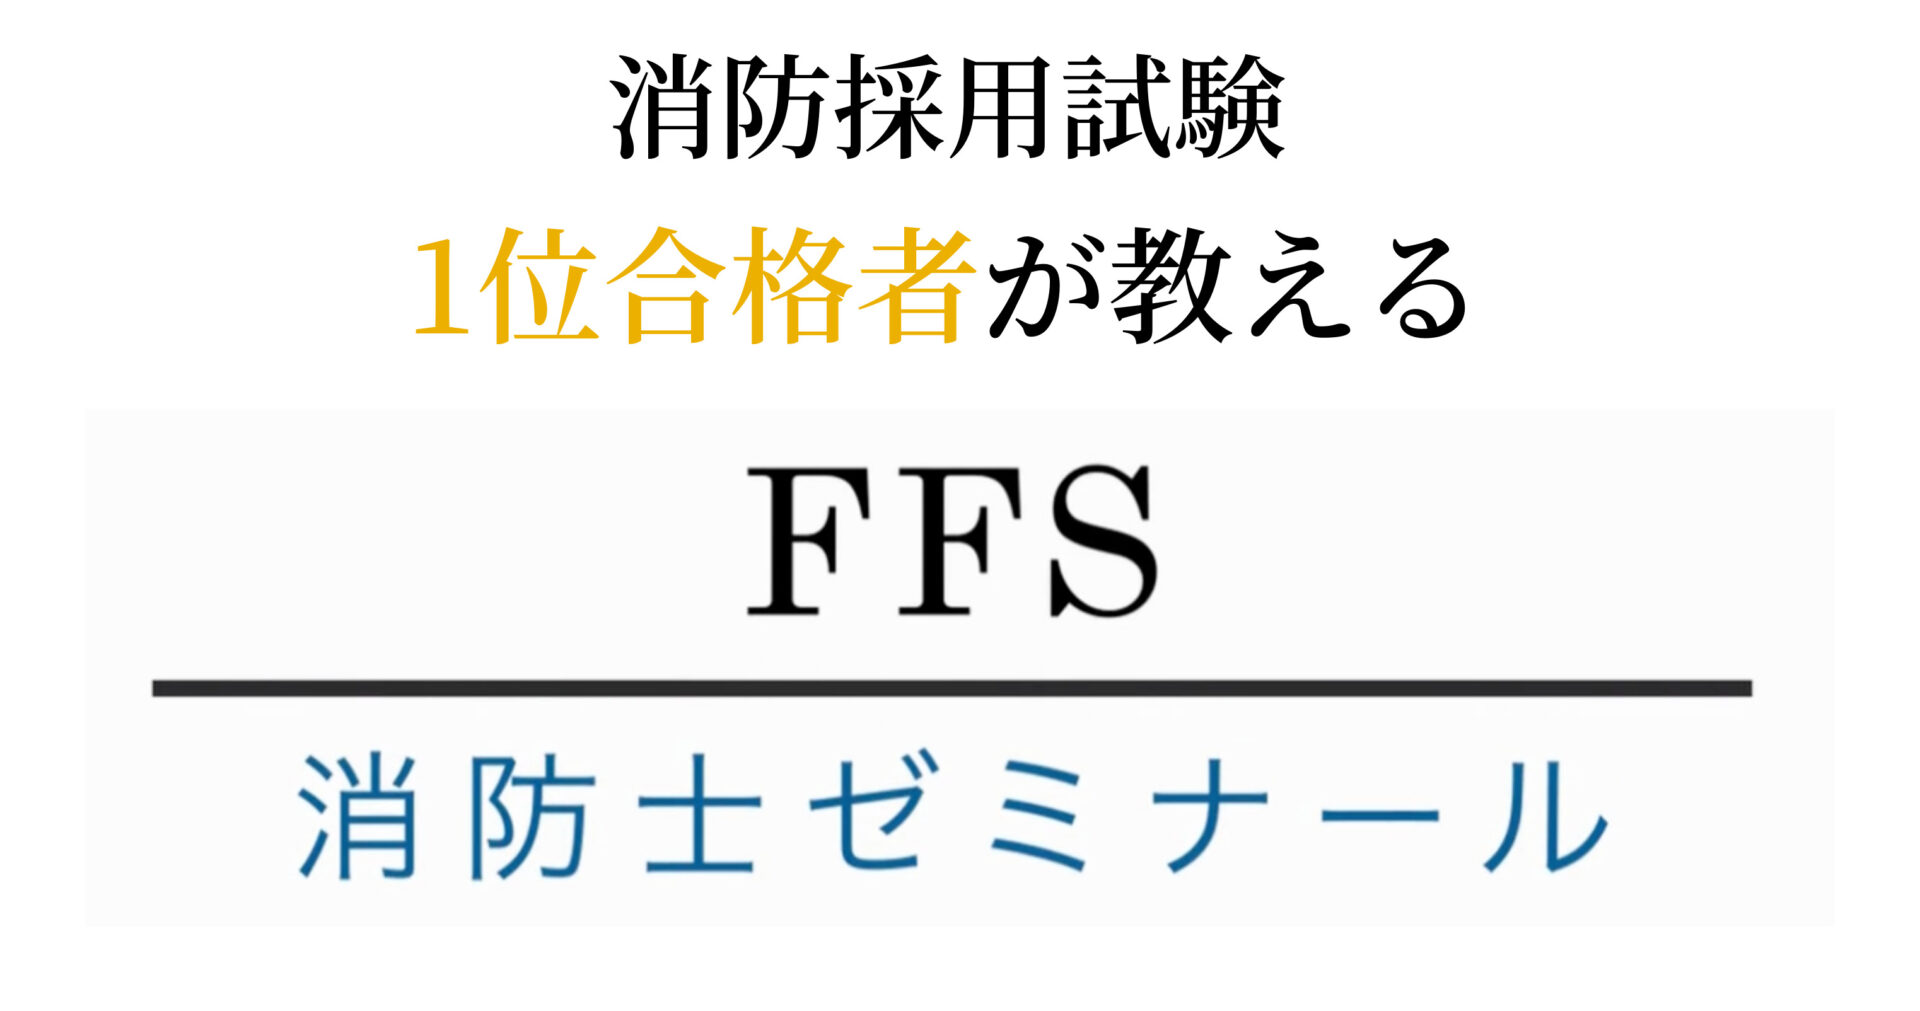 【公式サイト】FFS消防士ゼミナール